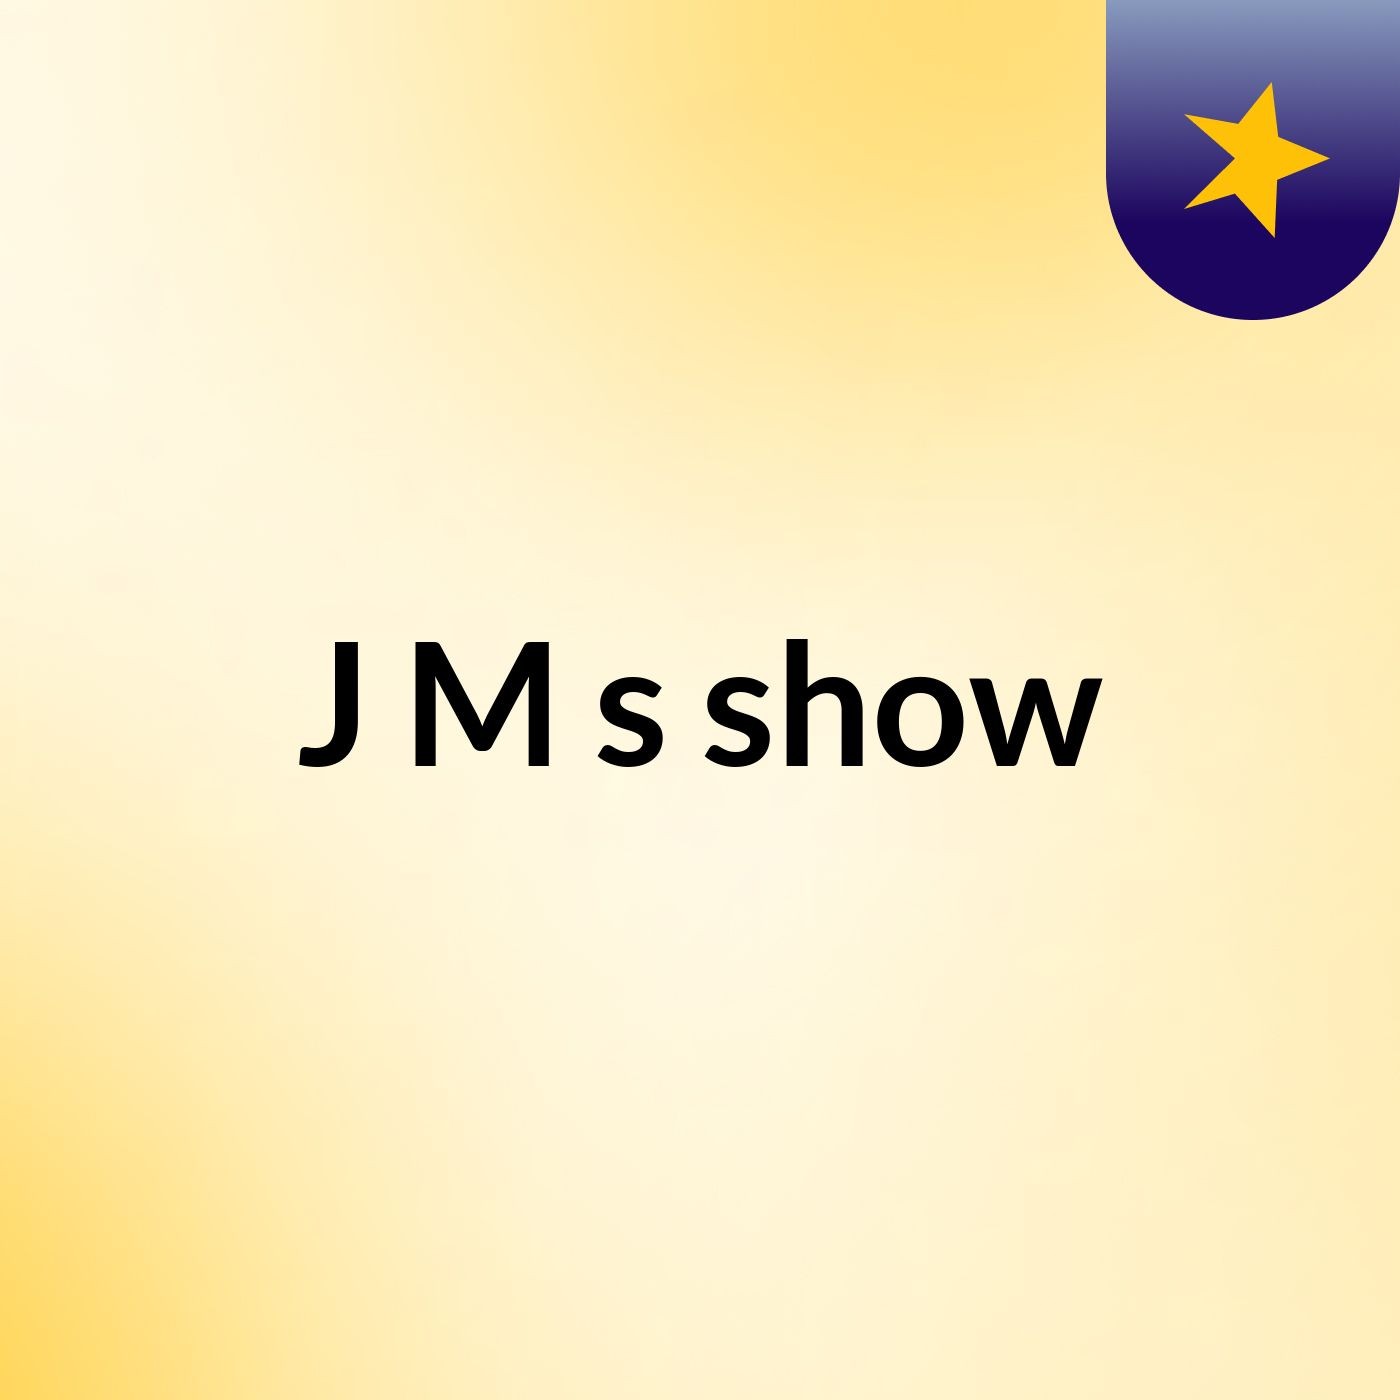 J&M's show